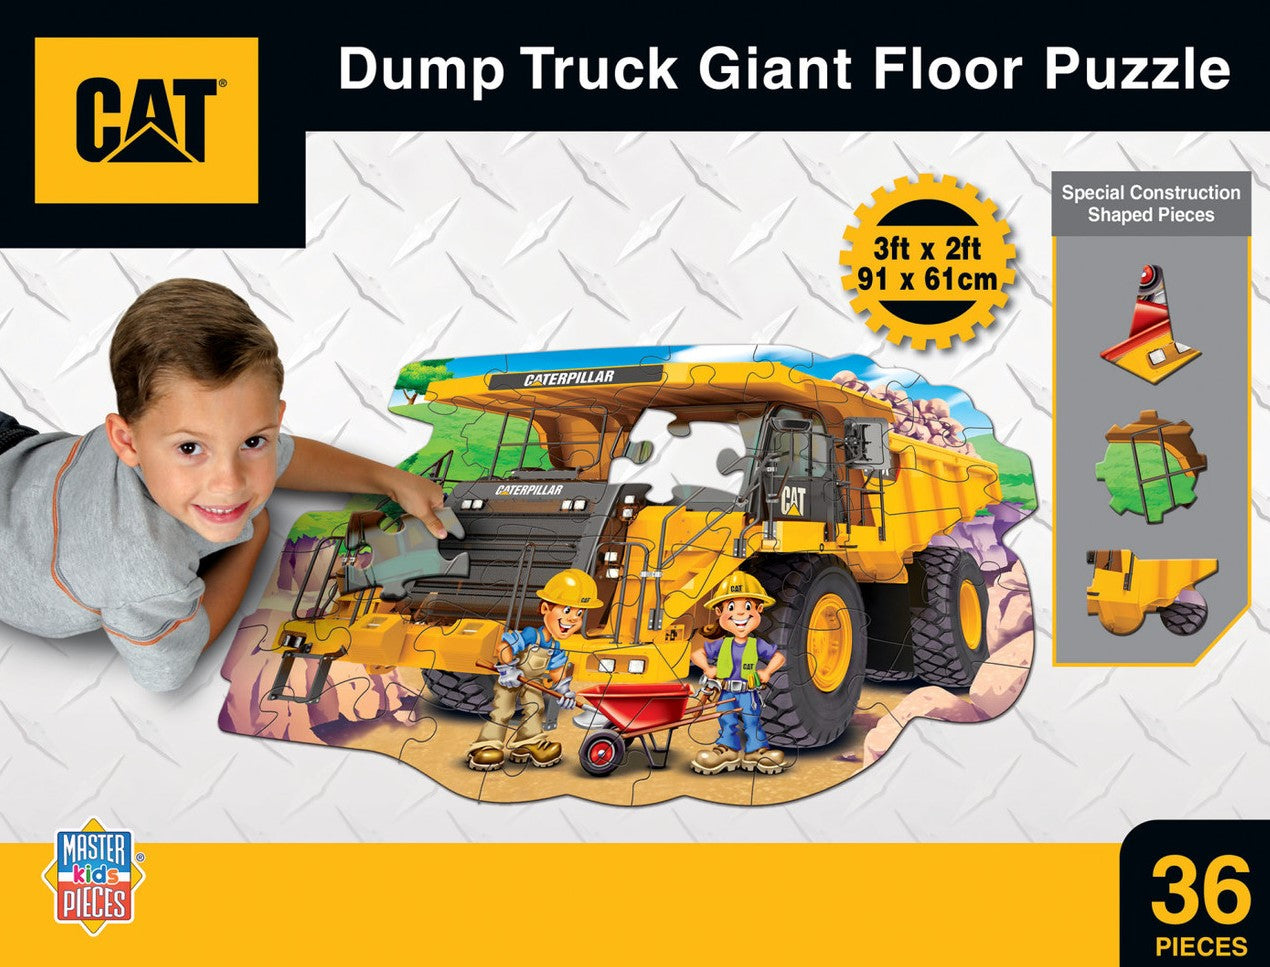 Floor Puzzle - CAT Dump Truck - 36 Piece